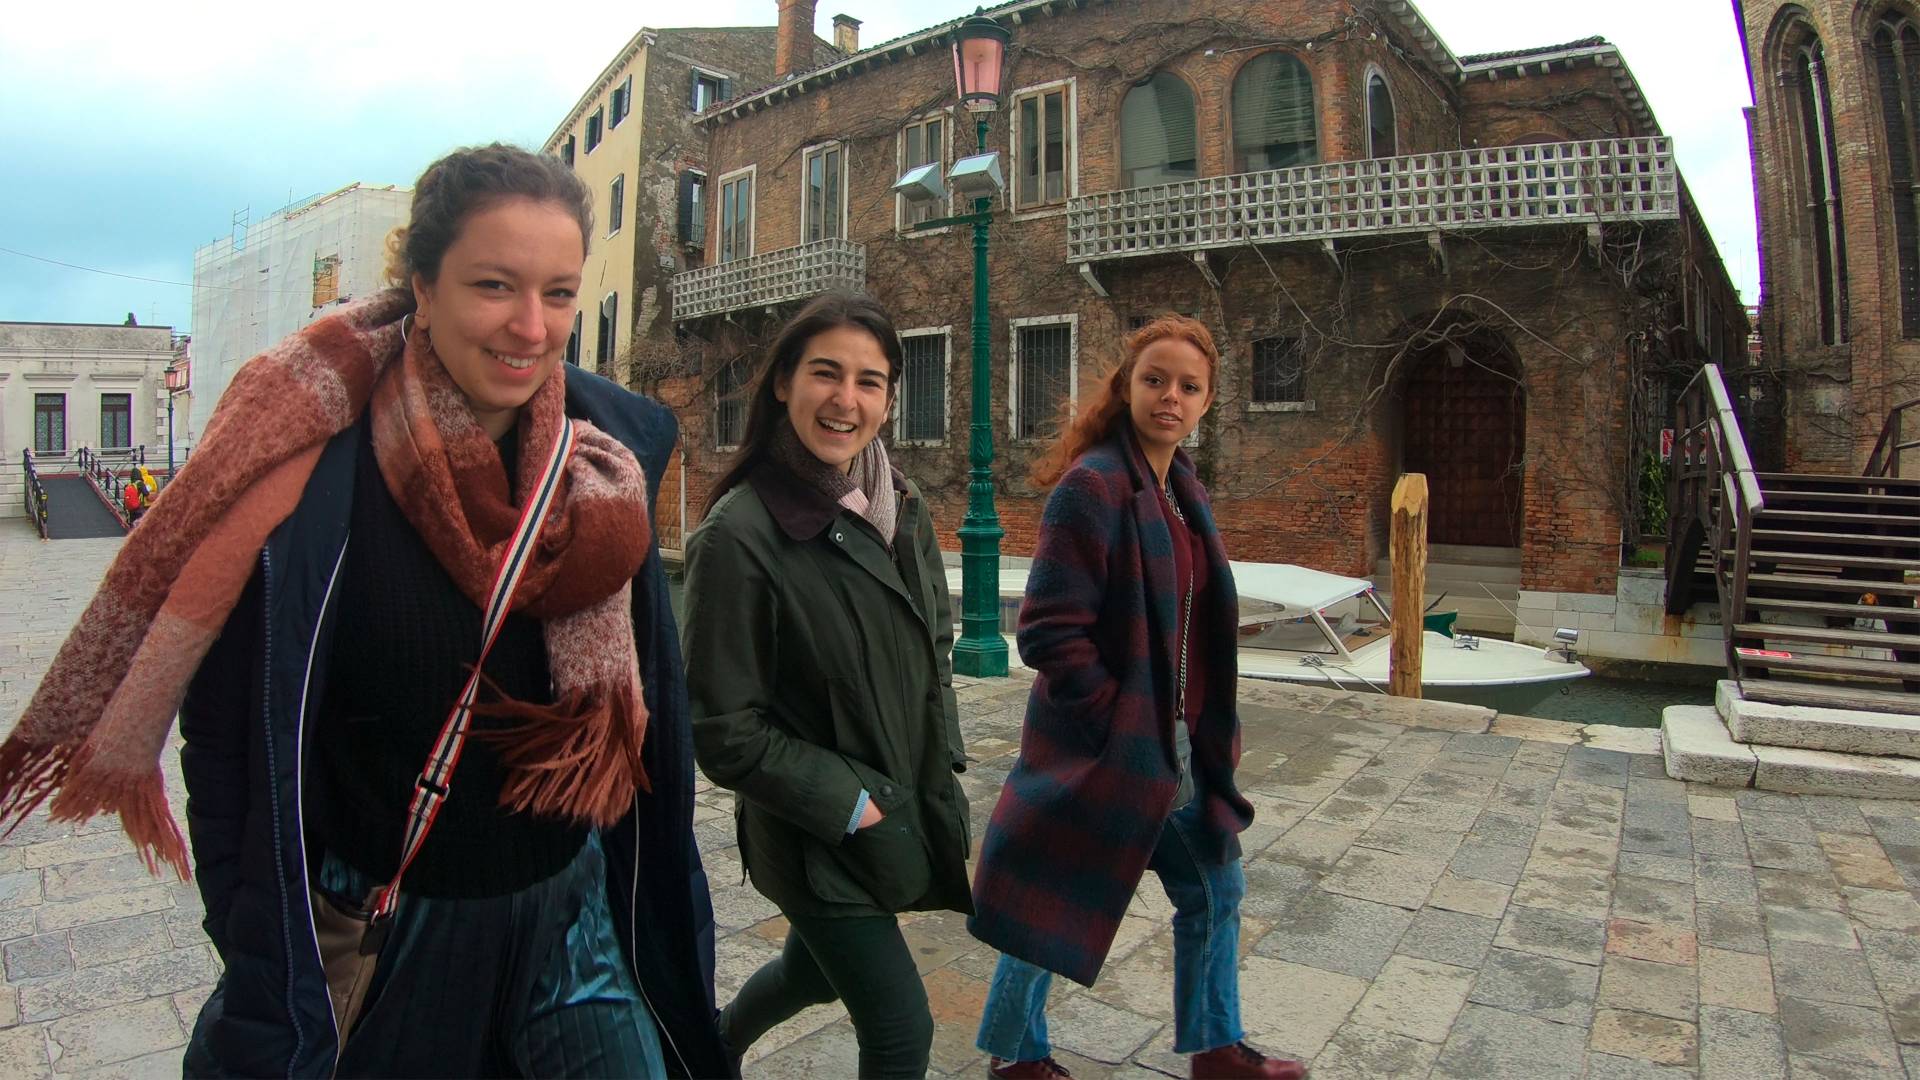 Peyton Lawrenz walking with friends in Venice